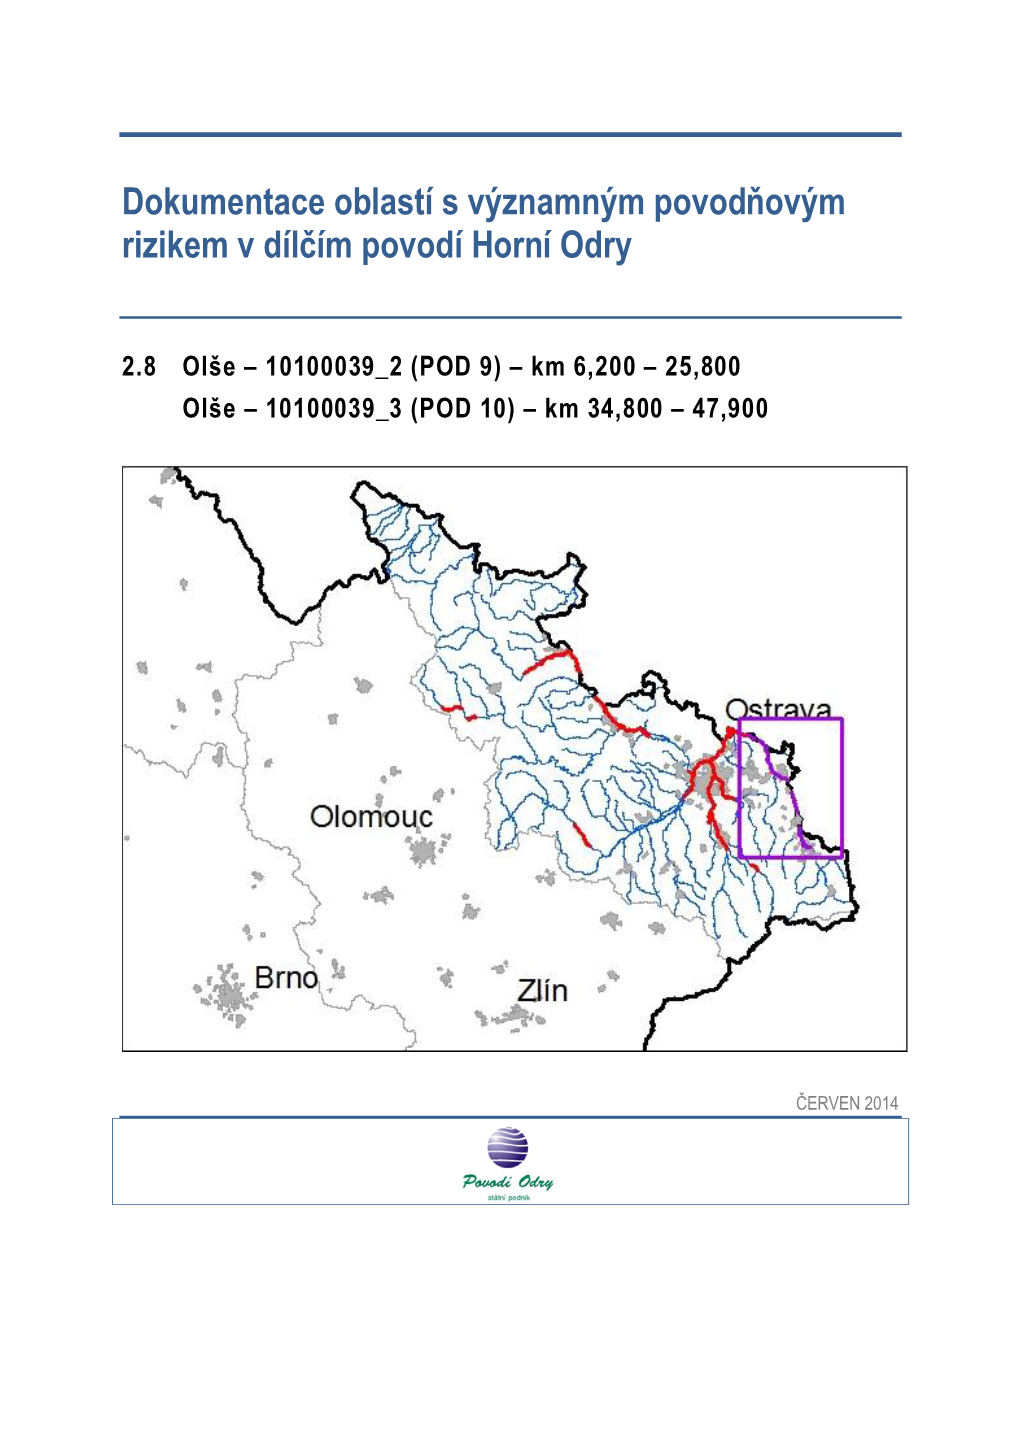 Dokumentace Oblastí S Významným Povodňovým Rizikem V Dílčím